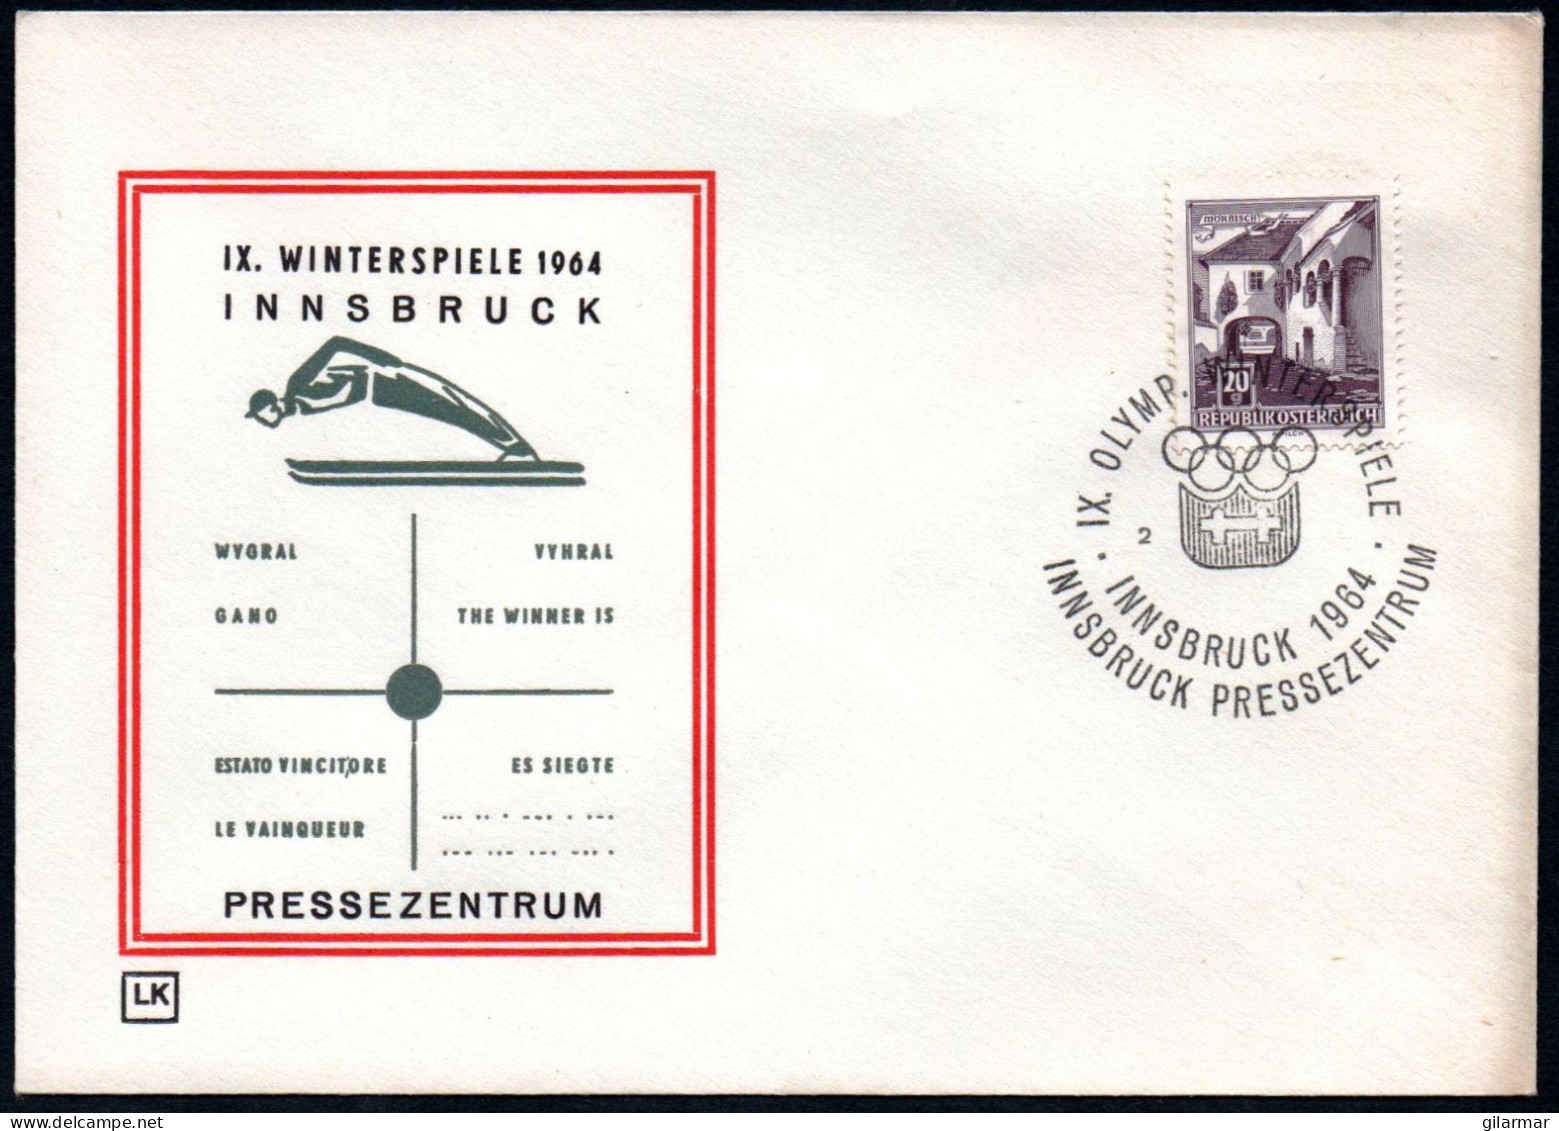 AUSTRIA INNSBRUCK 1964 - IX OLYMPIC WINTER GAMES - INNSBRUCK '64 - PRESS CENTRE - CANCEL # 2 - G - Winter 1964: Innsbruck